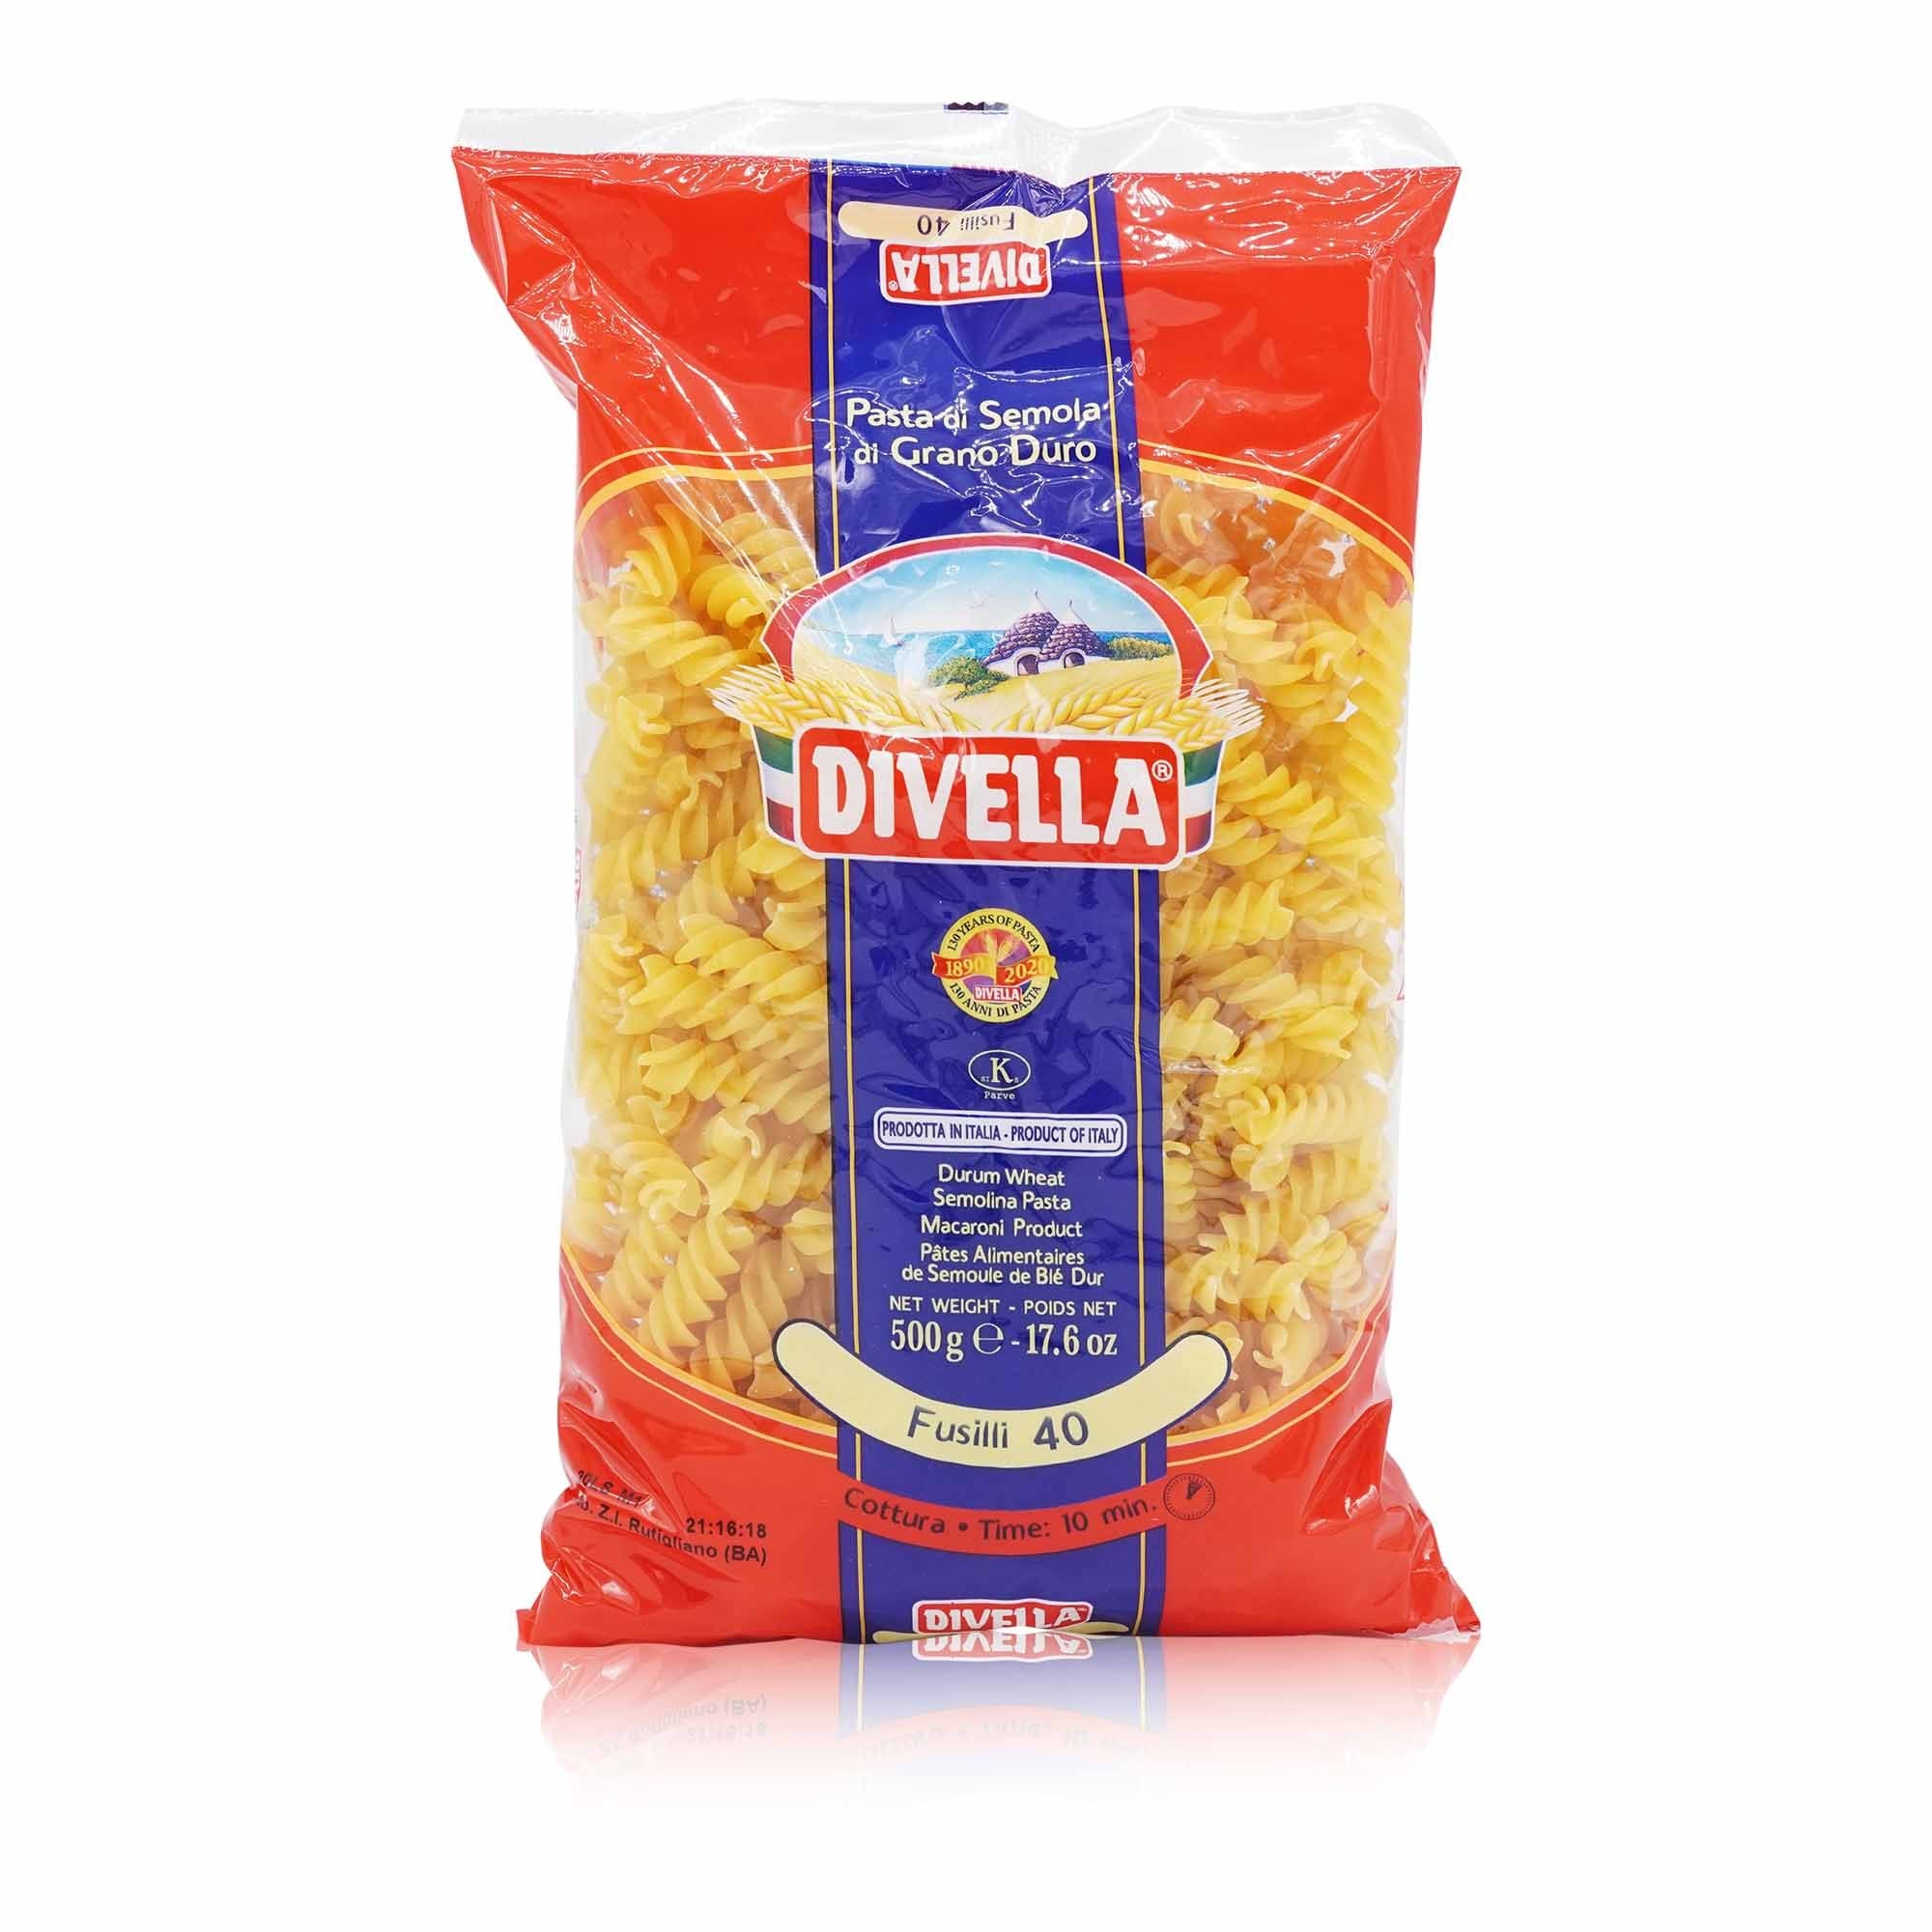 DIVELLA- Fusilli Nr. 40 - 0,5kg - italienisch-einkaufen.de